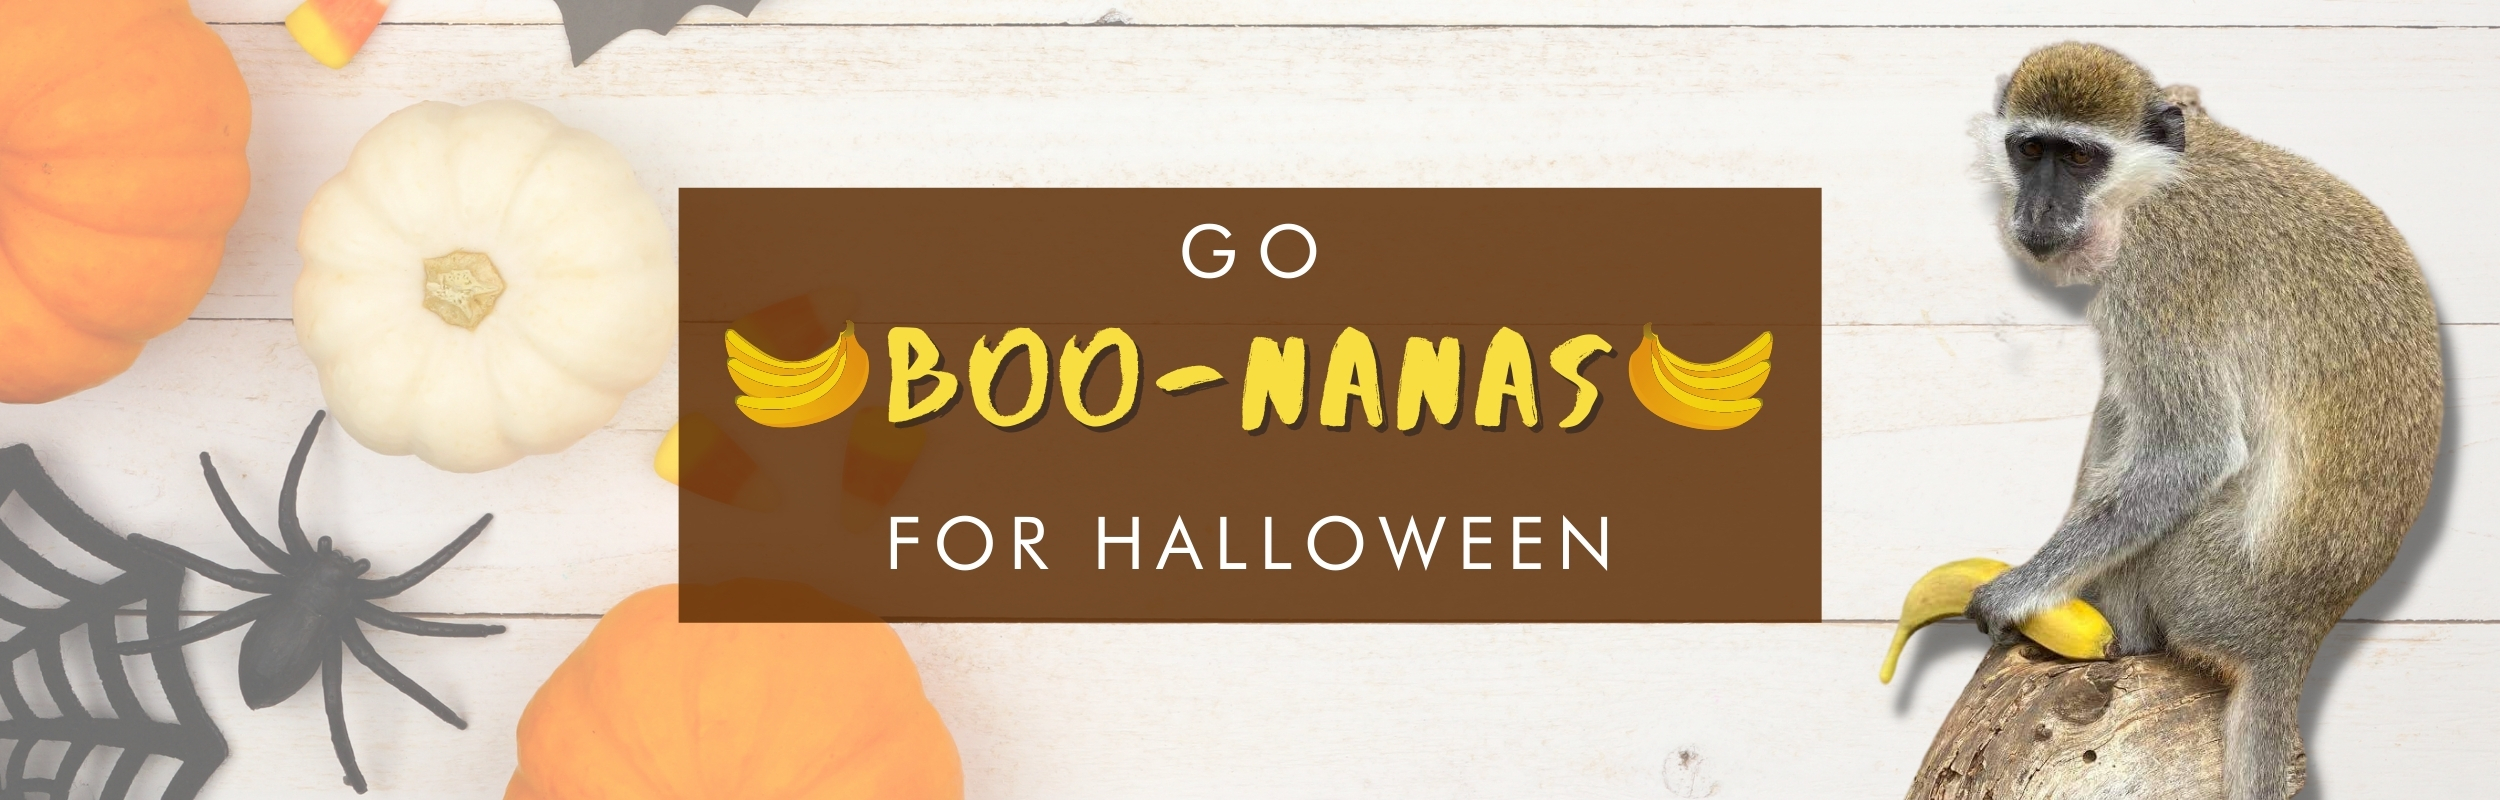 Go Boo-nanas for Halloween!